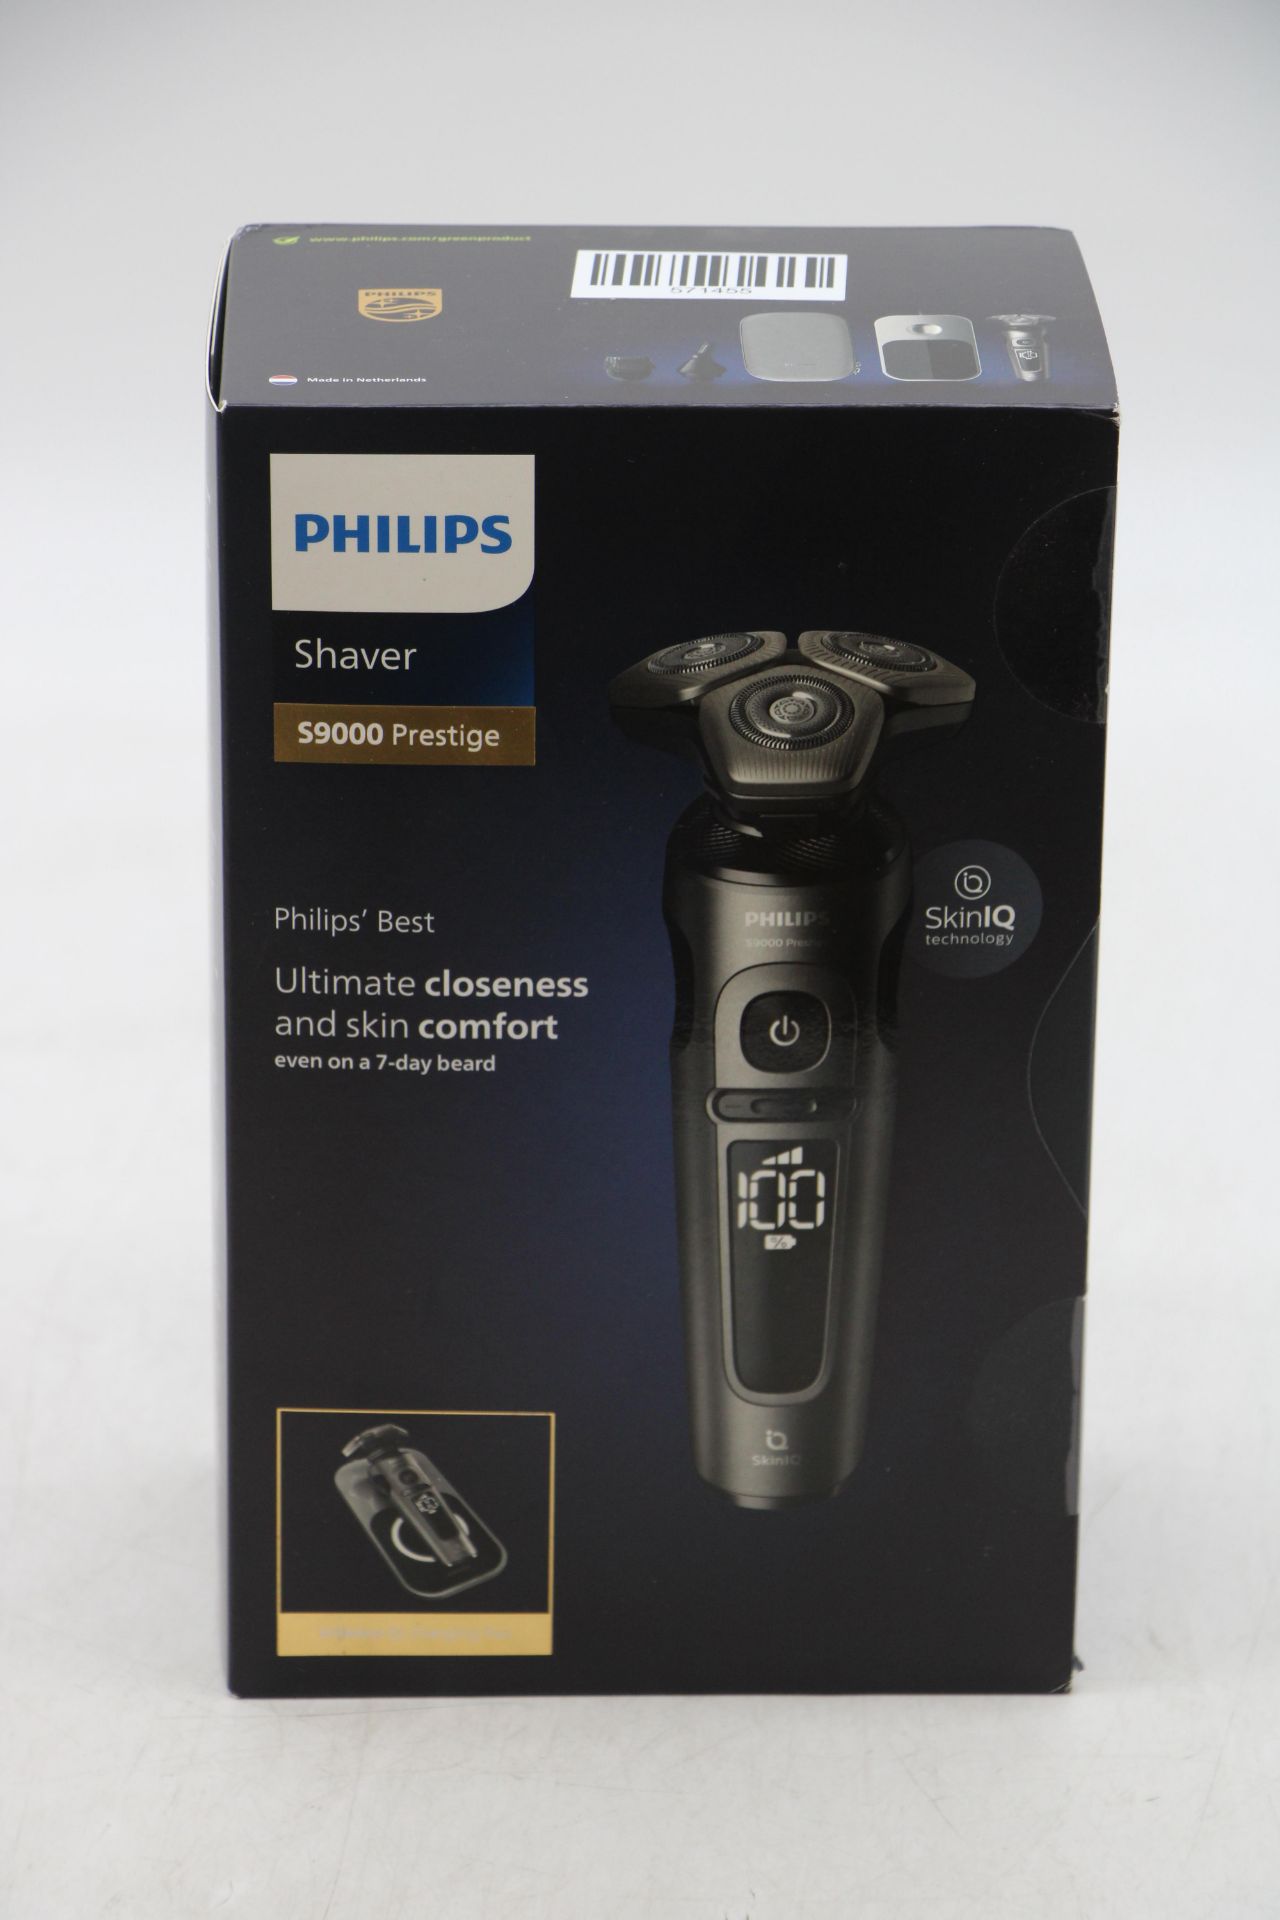 Phillips S9000 Prestige Hydro Skin Glide Shaver, Black/Grey - Image 2 of 2